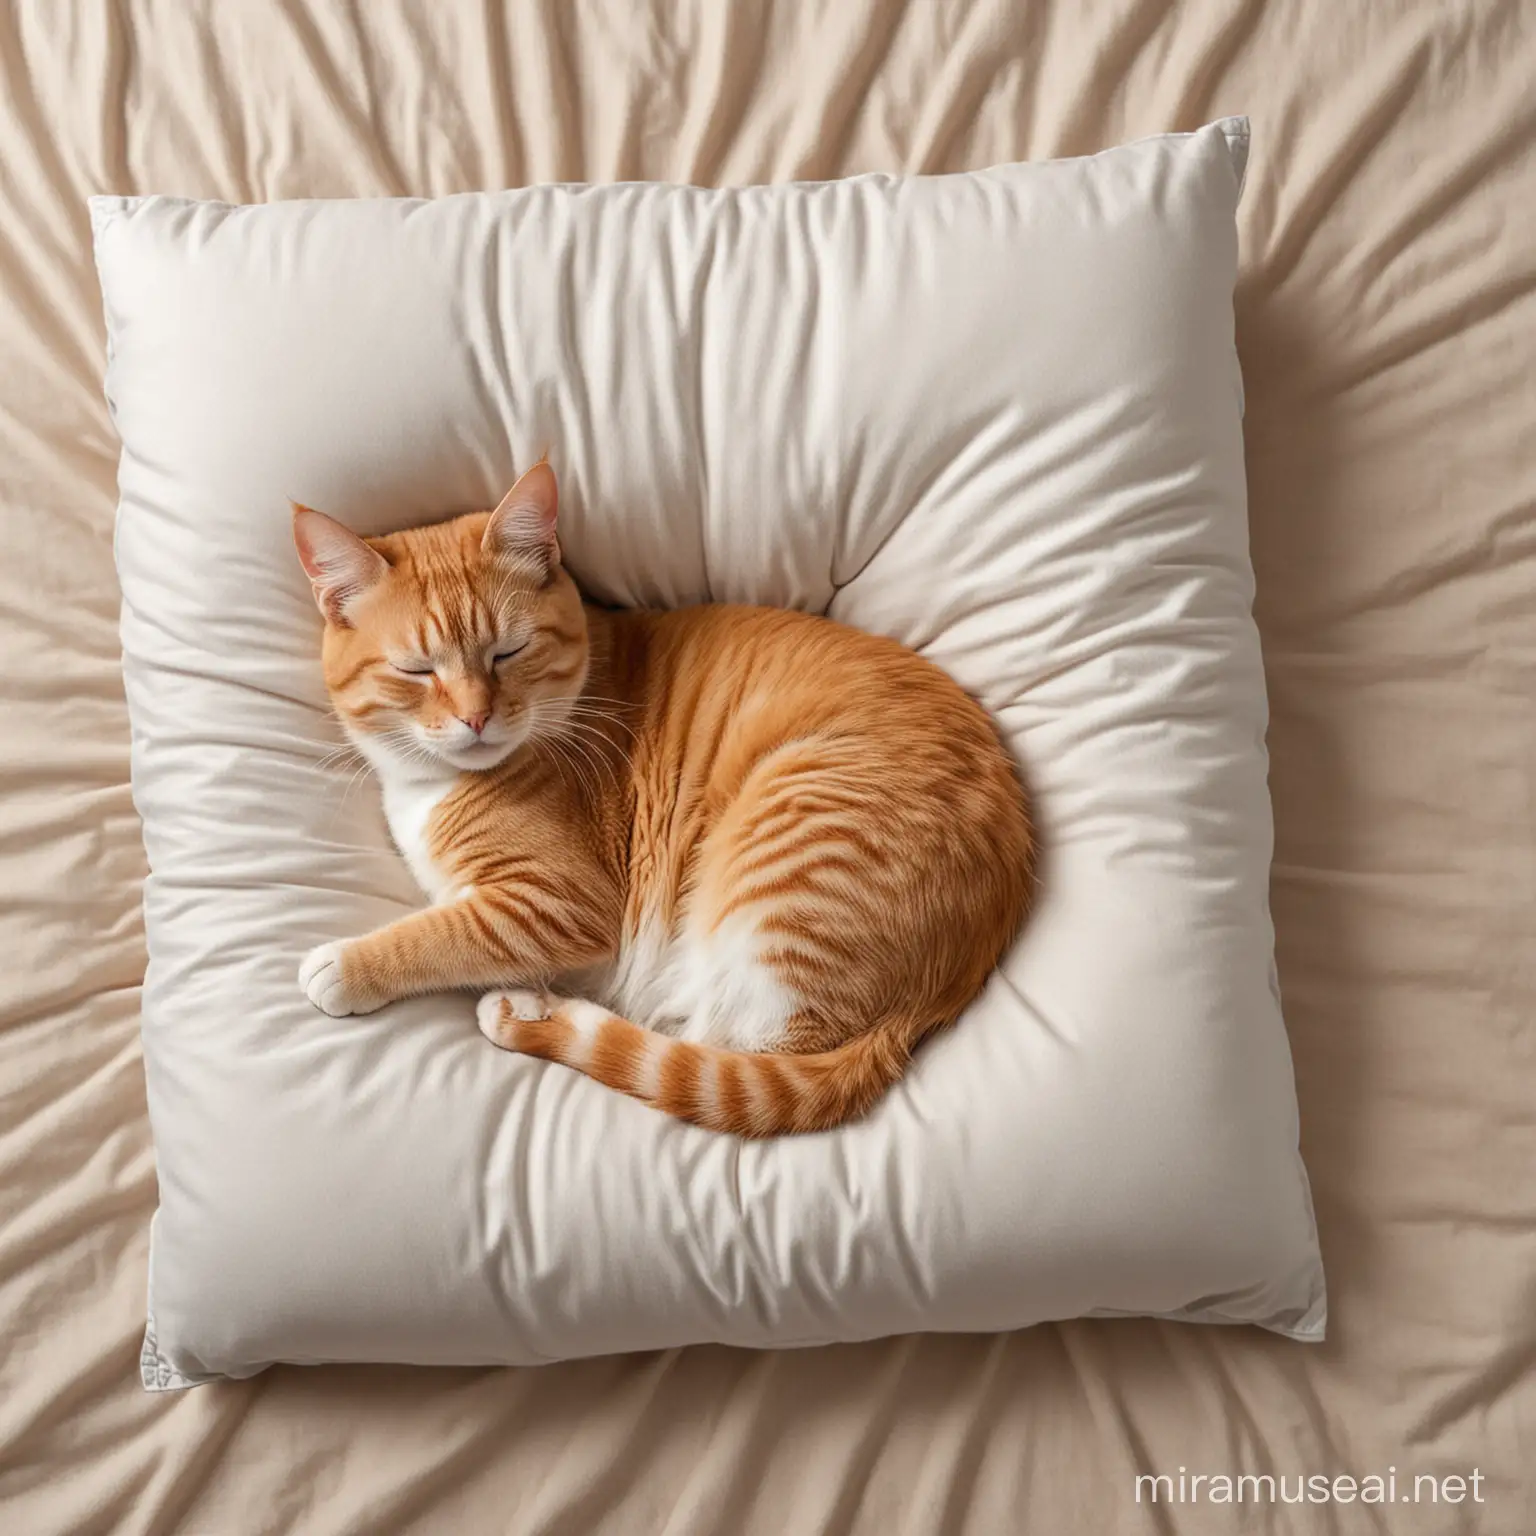 Кот лежит в мягкой подушке, животом вверх, спит, отдыхает, вид с верху